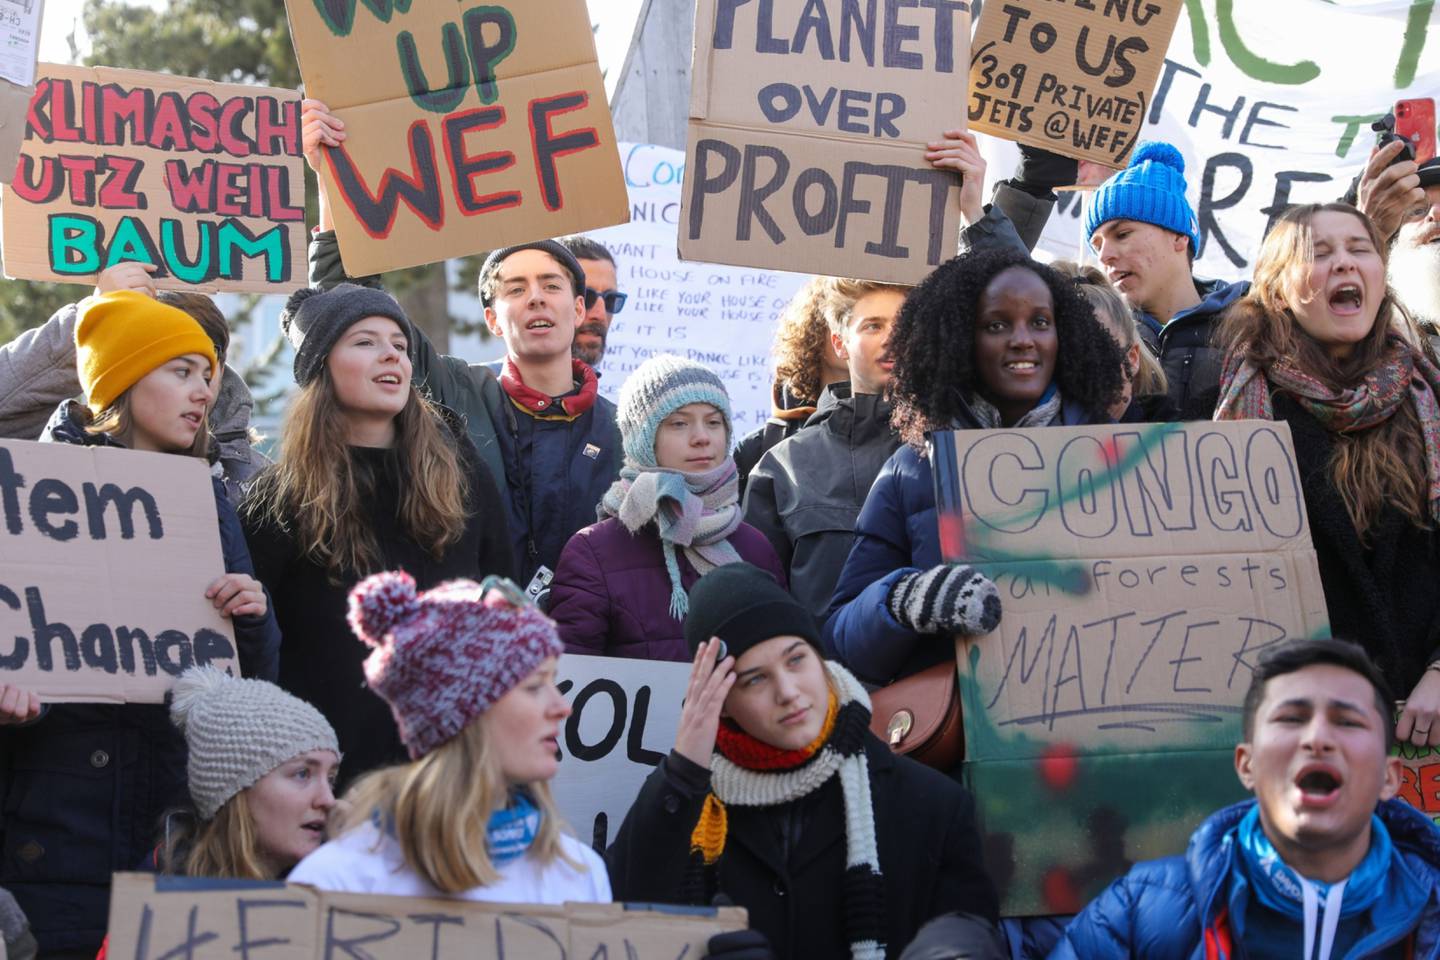 Las activistas climáticas Greta Thunberg, en el centro, Vanessa Nakate, en el centro a la derecha, Isabelle Axelsson, en el tercer lugar a la izquierda, y Luisa Neubauer, en el centro a la izquierda, sostienen pancartas mientras participan en una manifestación en la jornada de clausura del Foro Económico Mundial (FEM) en Davos, Suiza, el viernes 24 de enero de 2020.